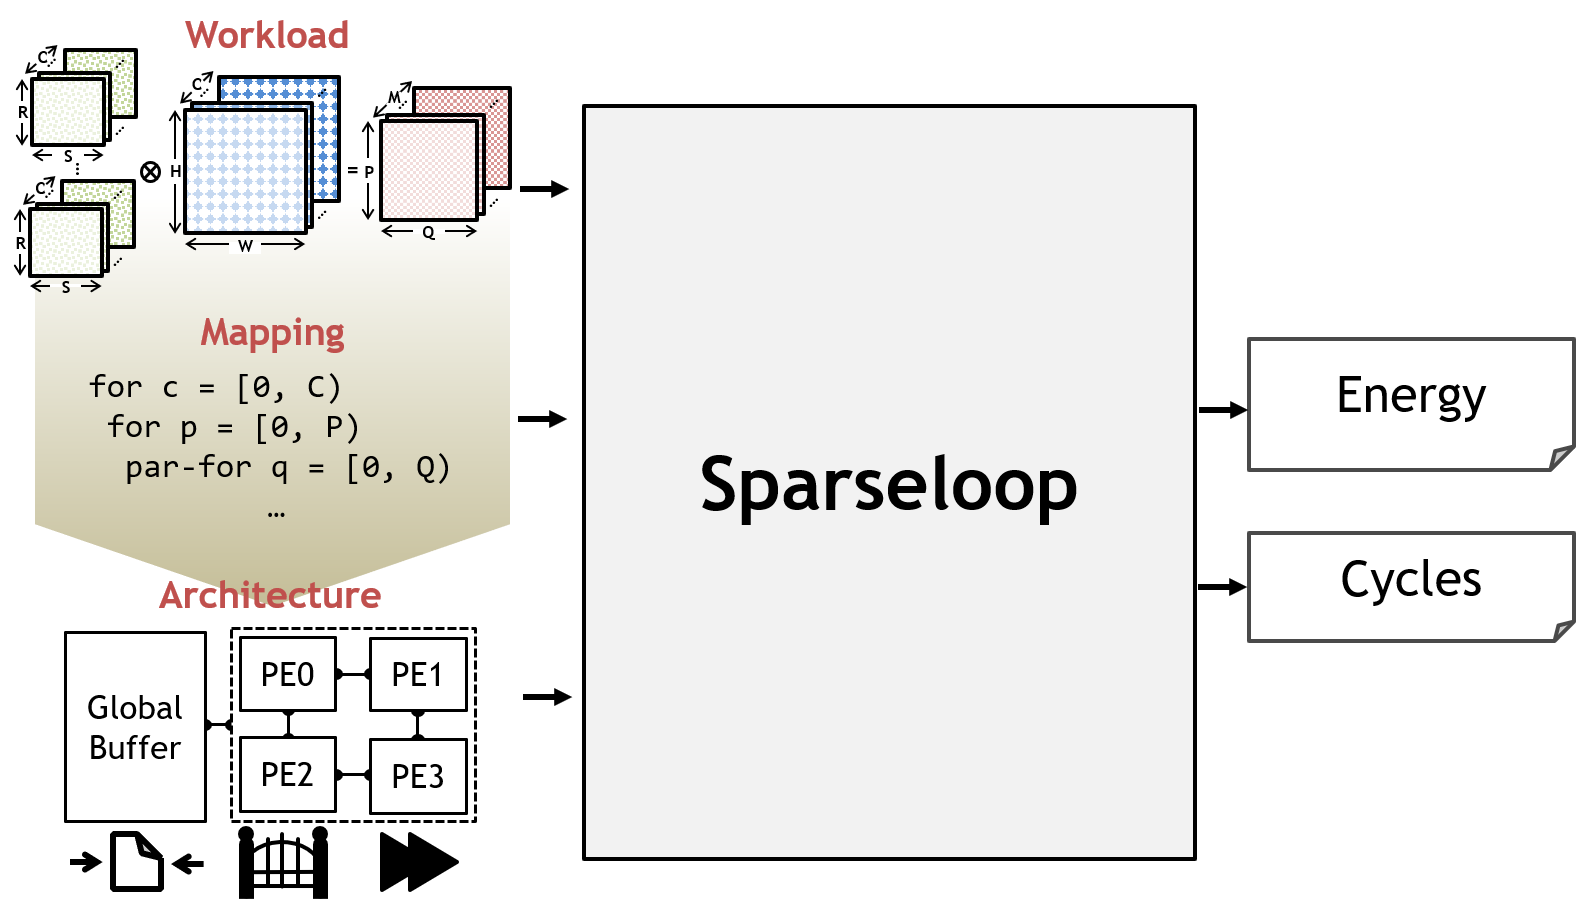  High-level block diagram of Sparseloop